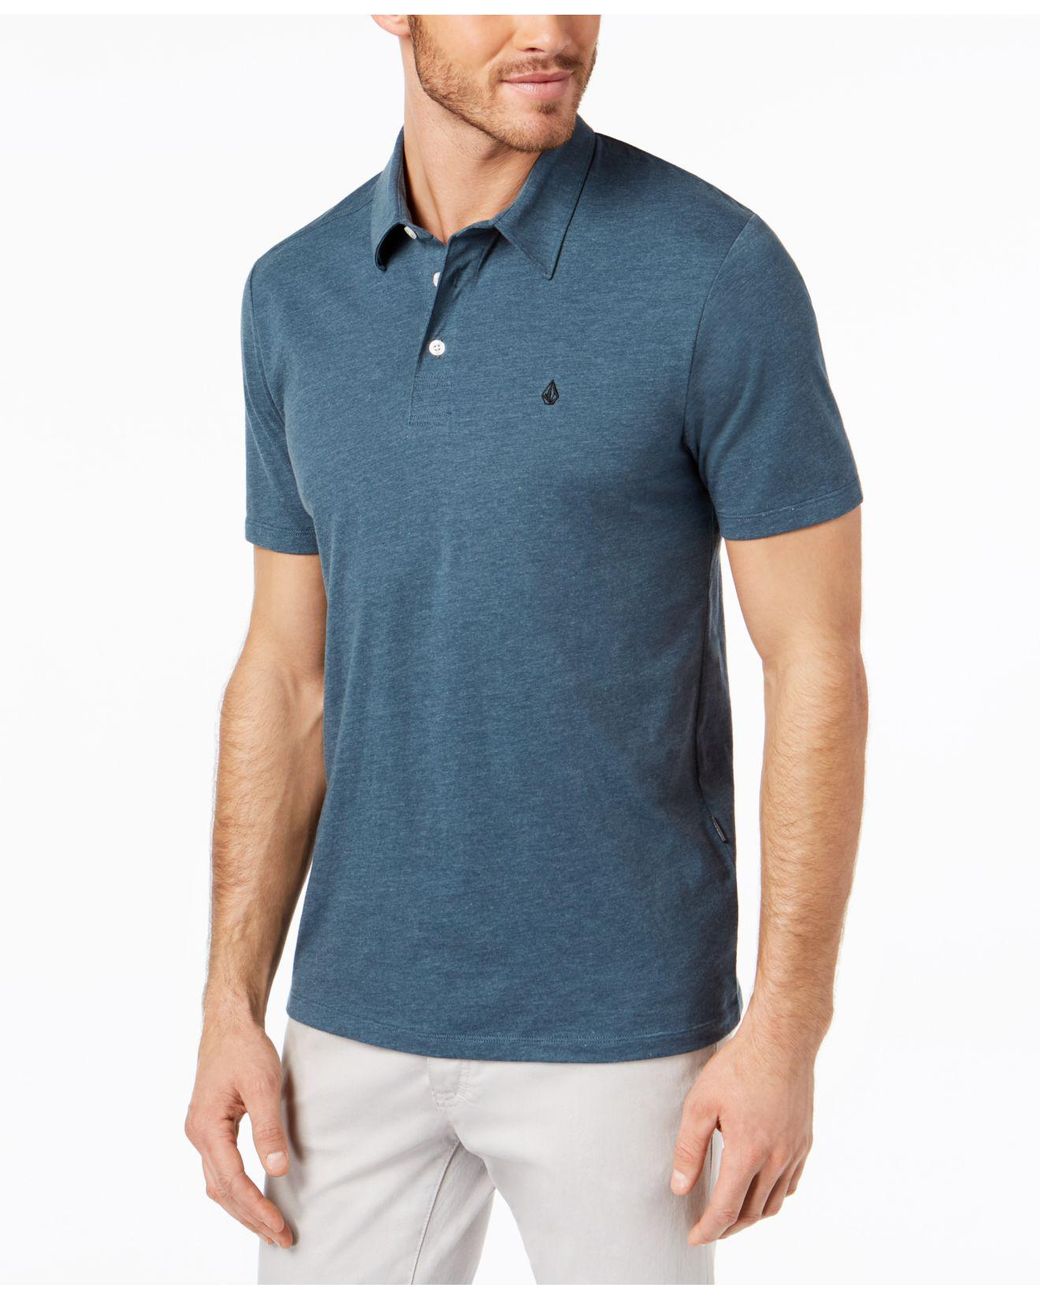 Volcom Cotton Banger Short Sleeves Polo Shirt in Blue for Men - Lyst